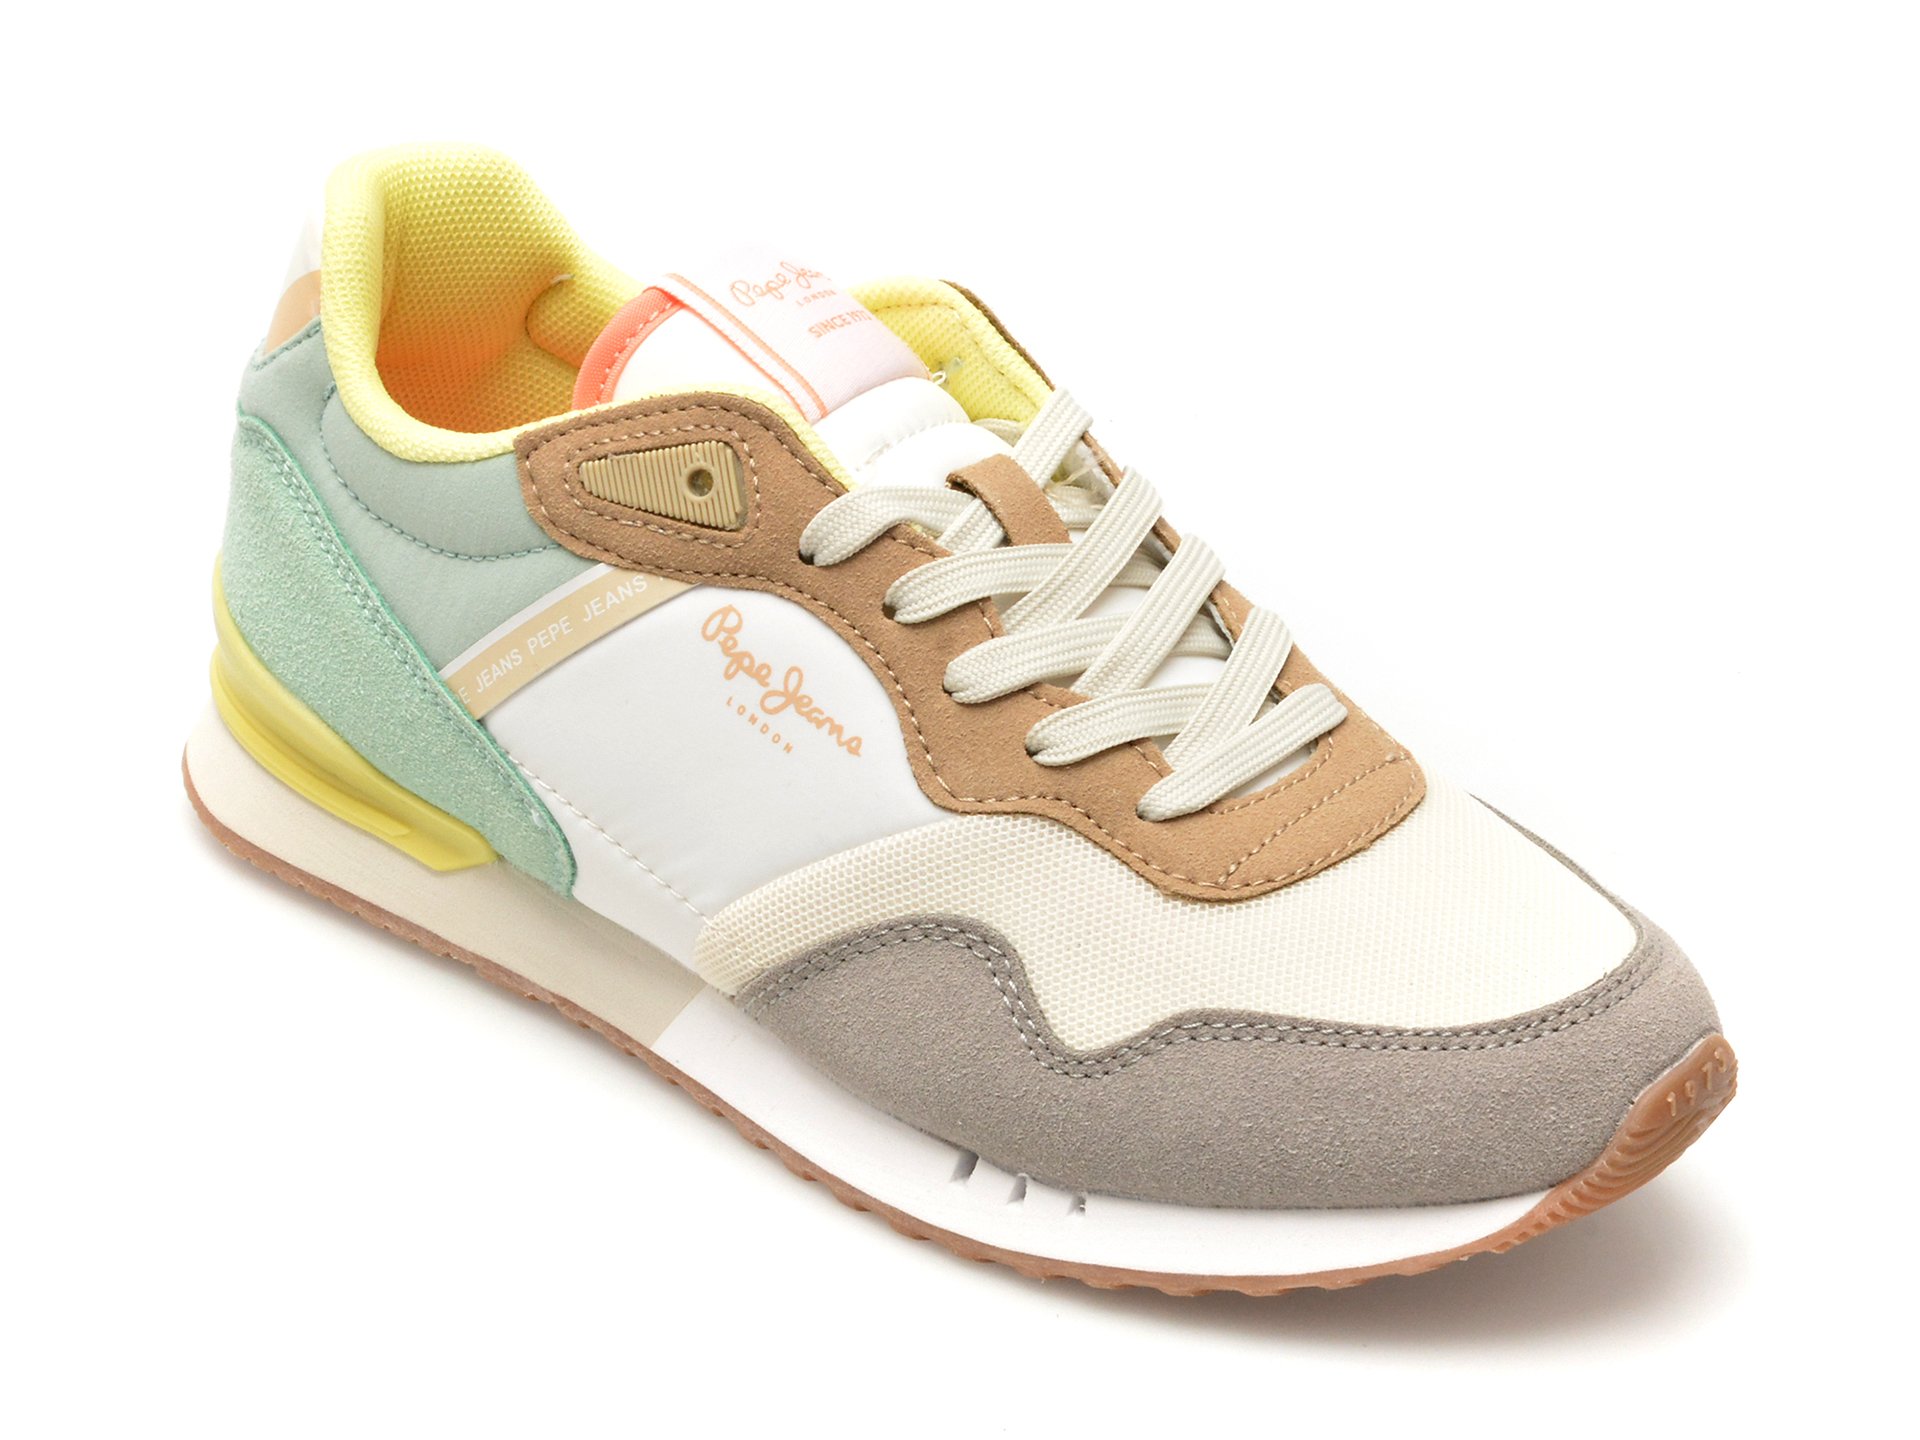 Pantofi PEPE JEANS multicolor, LS40005, din piele ecologica